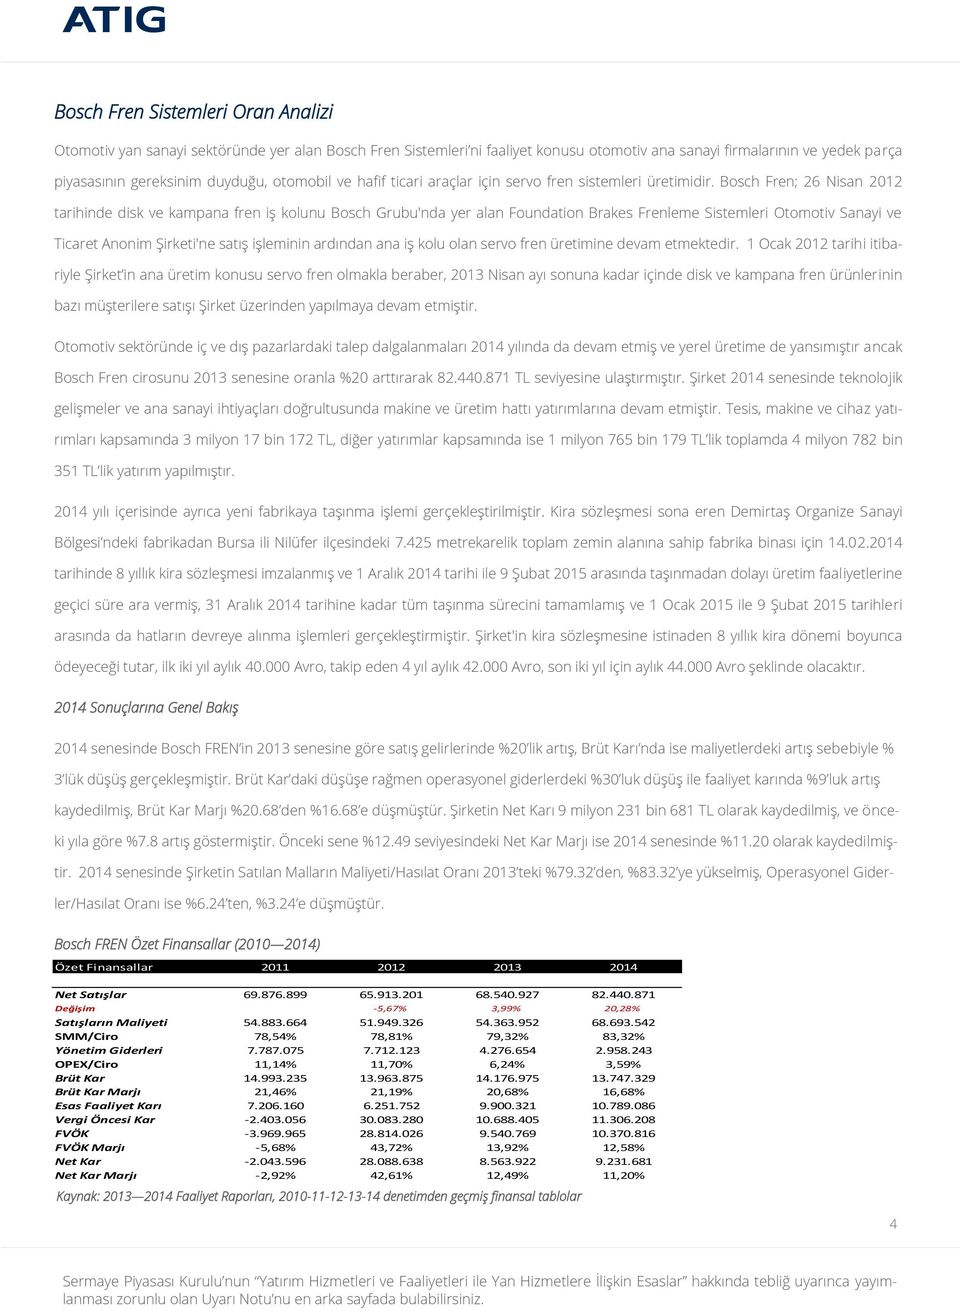 Bosch Fren; 26 Nisan 2012 tarihinde disk ve kampana fren iş kolunu Bosch Grubu'nda yer alan Foundation Brakes Frenleme Sistemleri Otomotiv Sanayi ve Ticaret Anonim Şirketi'ne satış işleminin ardından